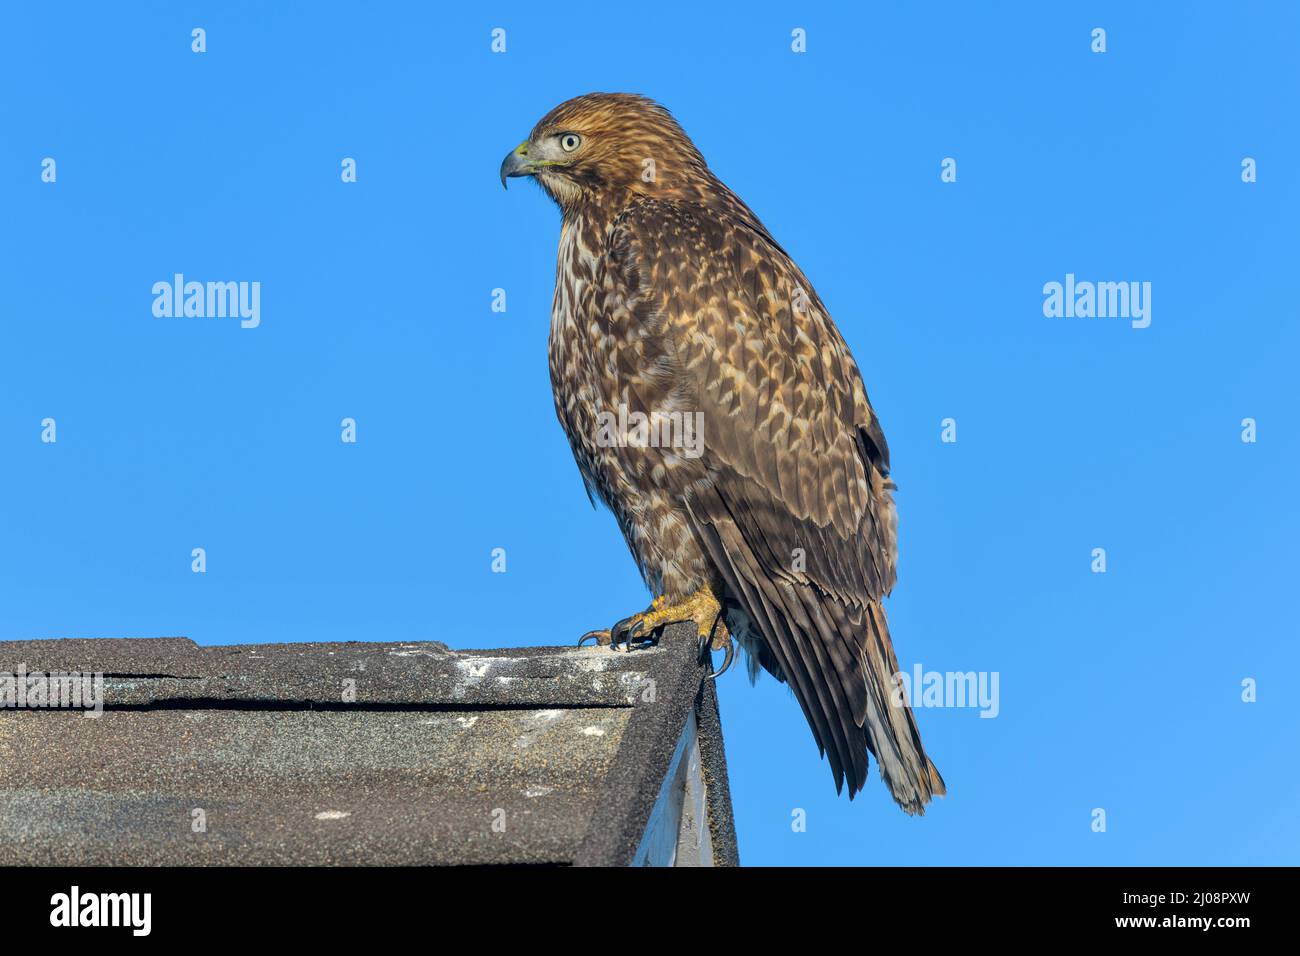 Red-Ted Hawk - Vue rapprochée d'un faucon à queue rouge qui se trouve à l'extrémité d'une crête du toit d'une maison résidentielle. Lakewood, Colorado, États-Unis. Banque D'Images